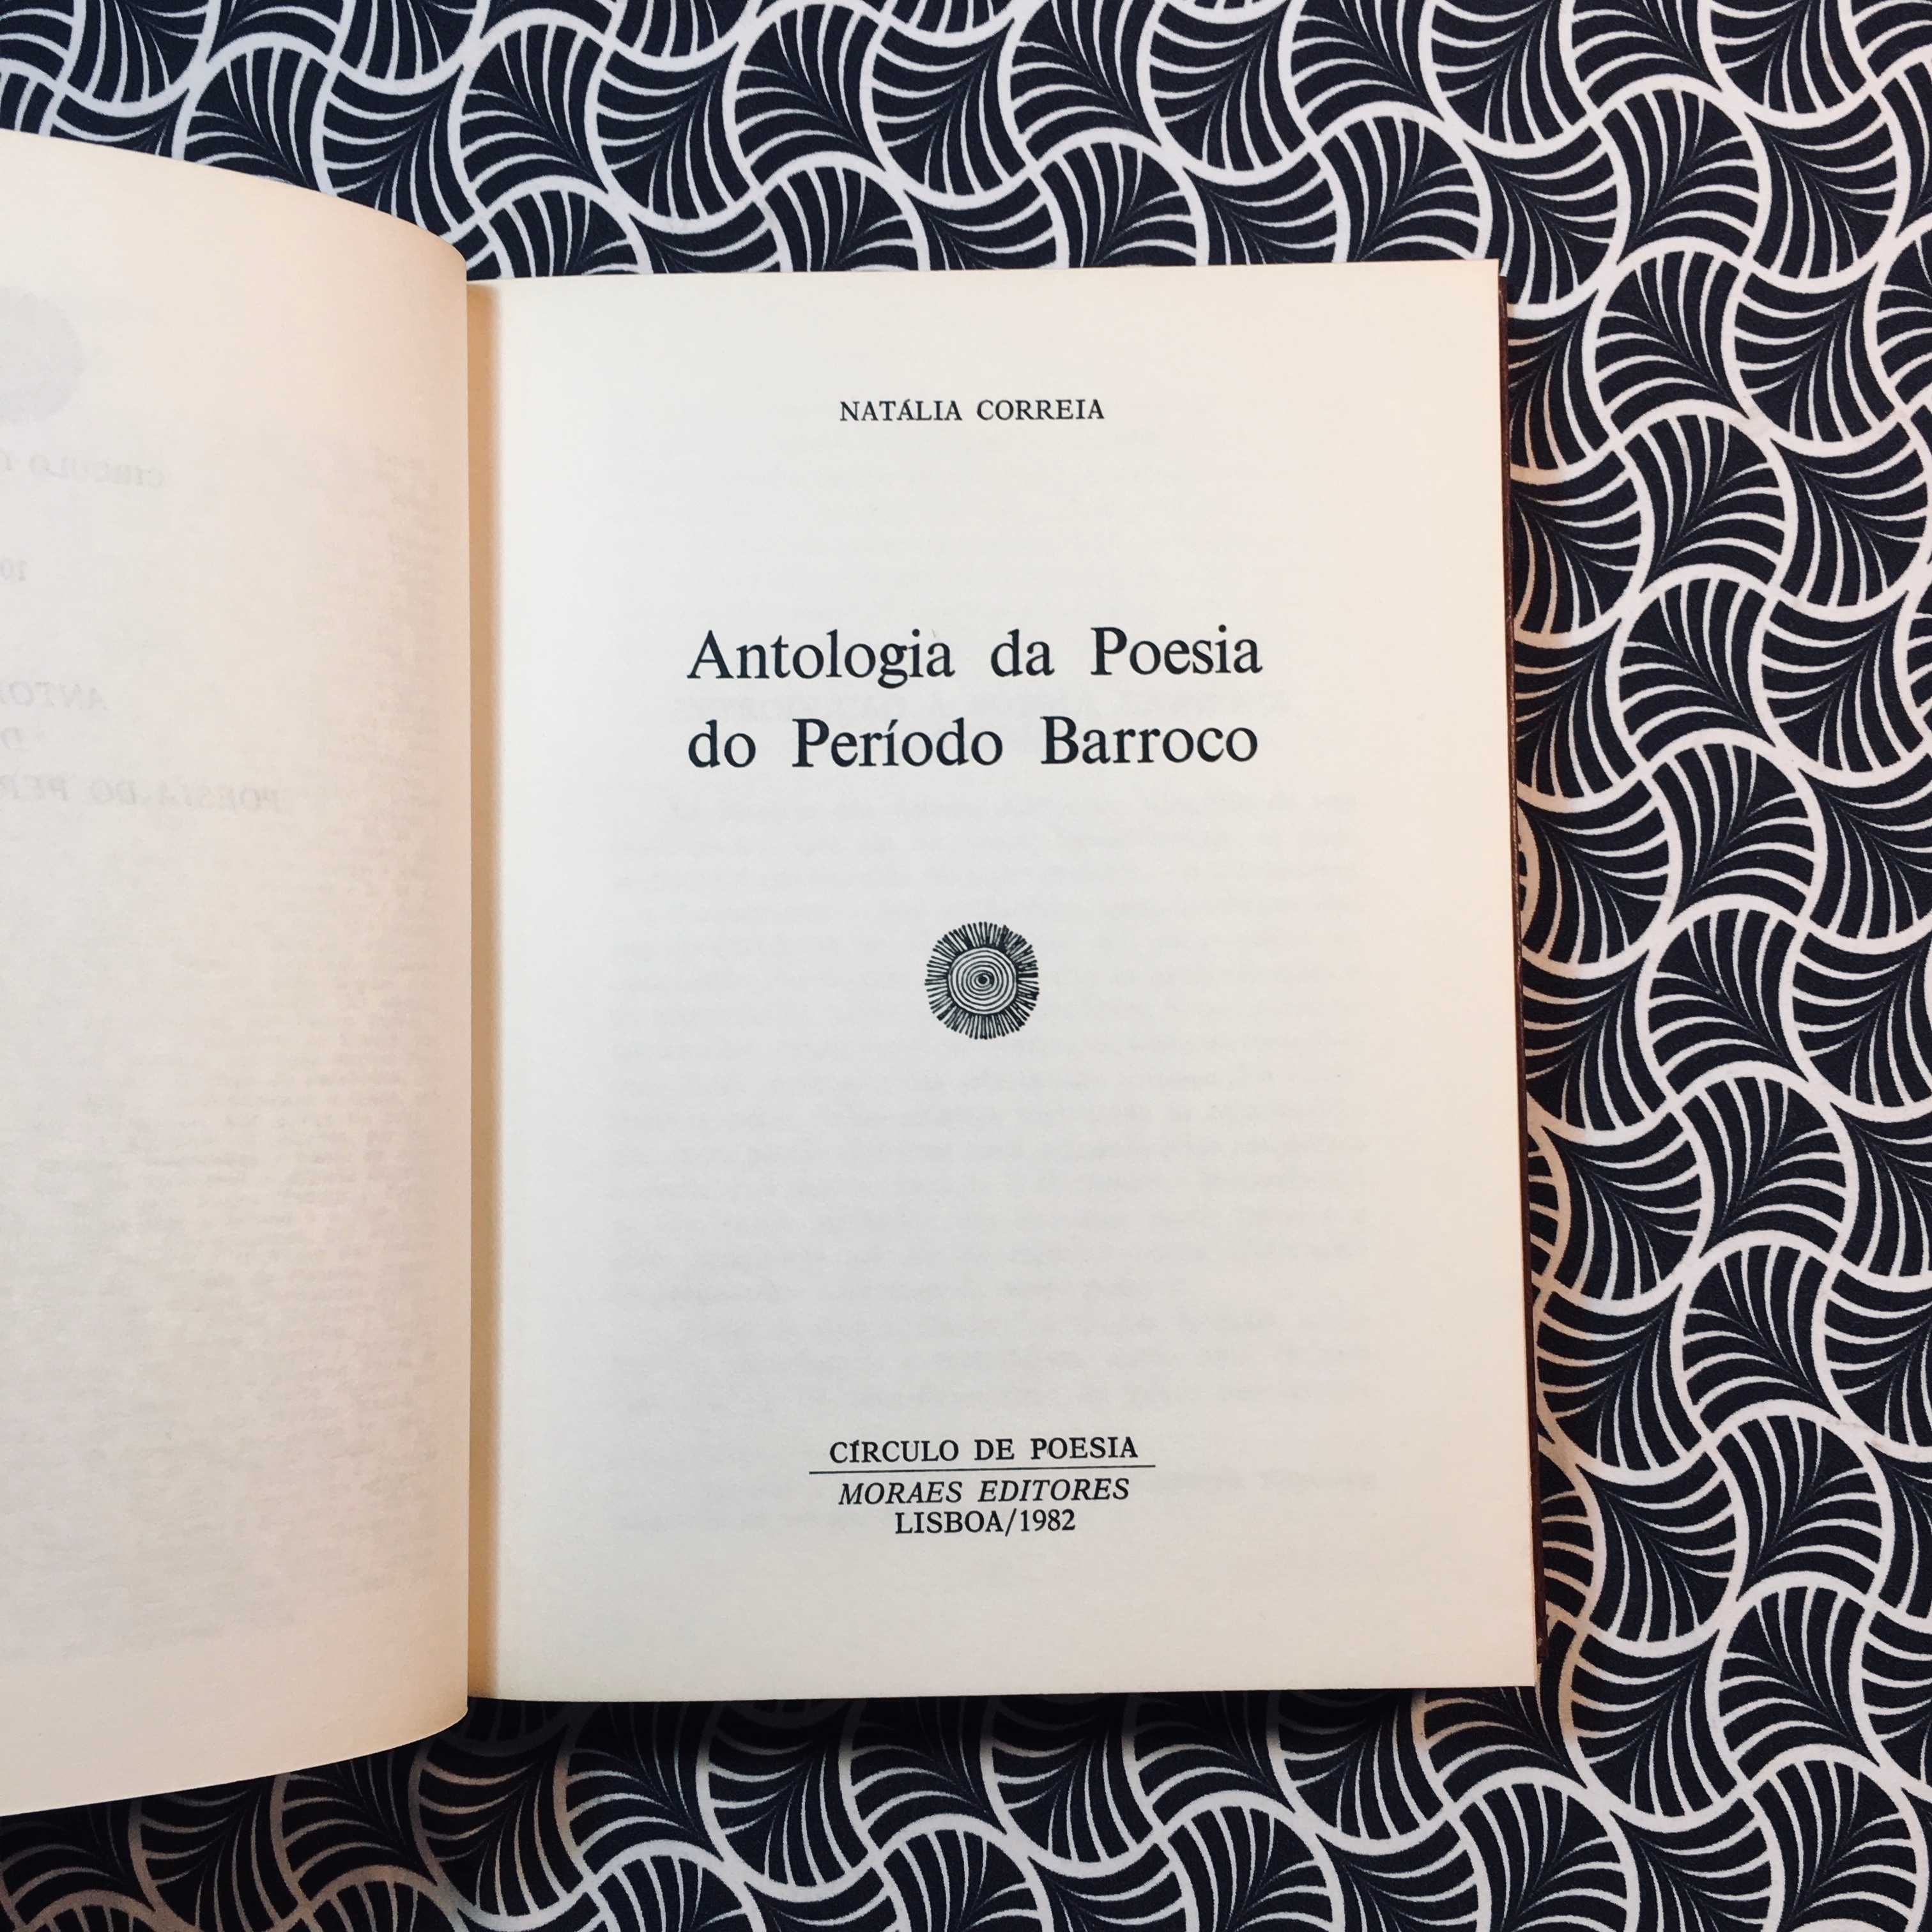 Antologia da Poesia do Período Barroco (1ª ed.) - Natália Correia